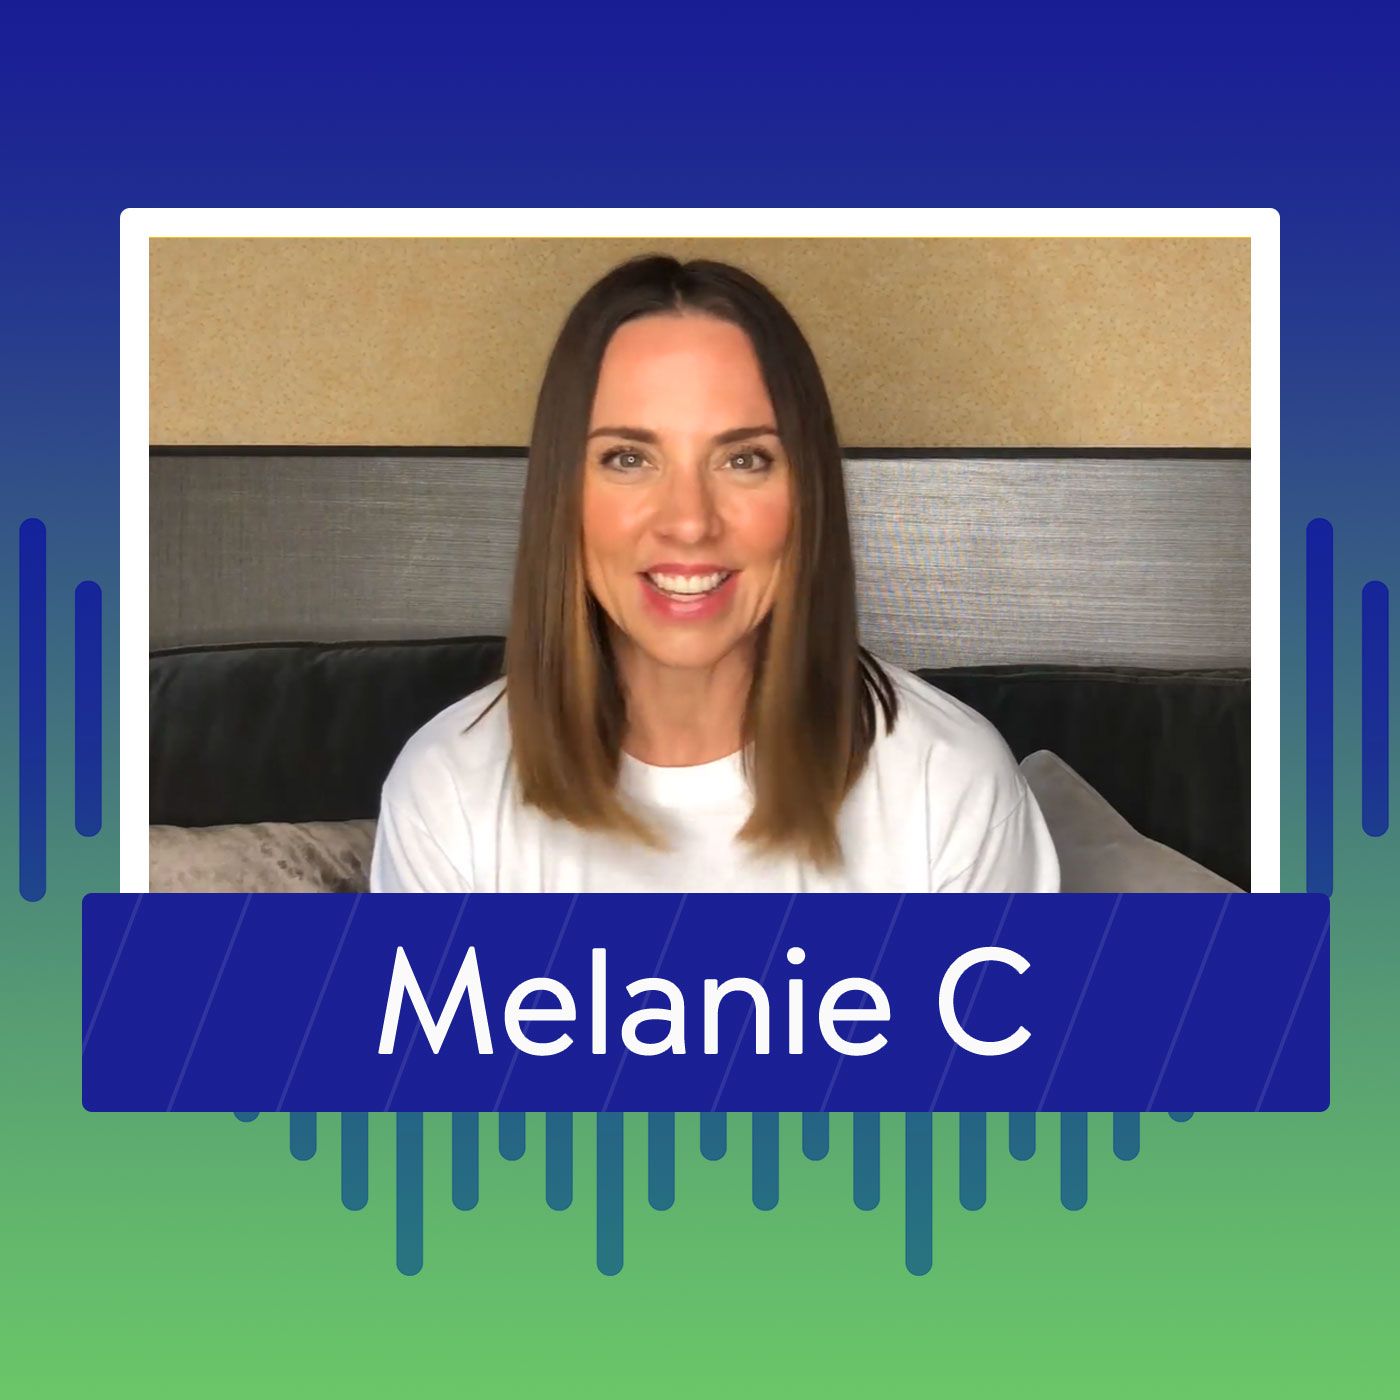 Melanie C confiesa con cuál celebrity tendría una cita